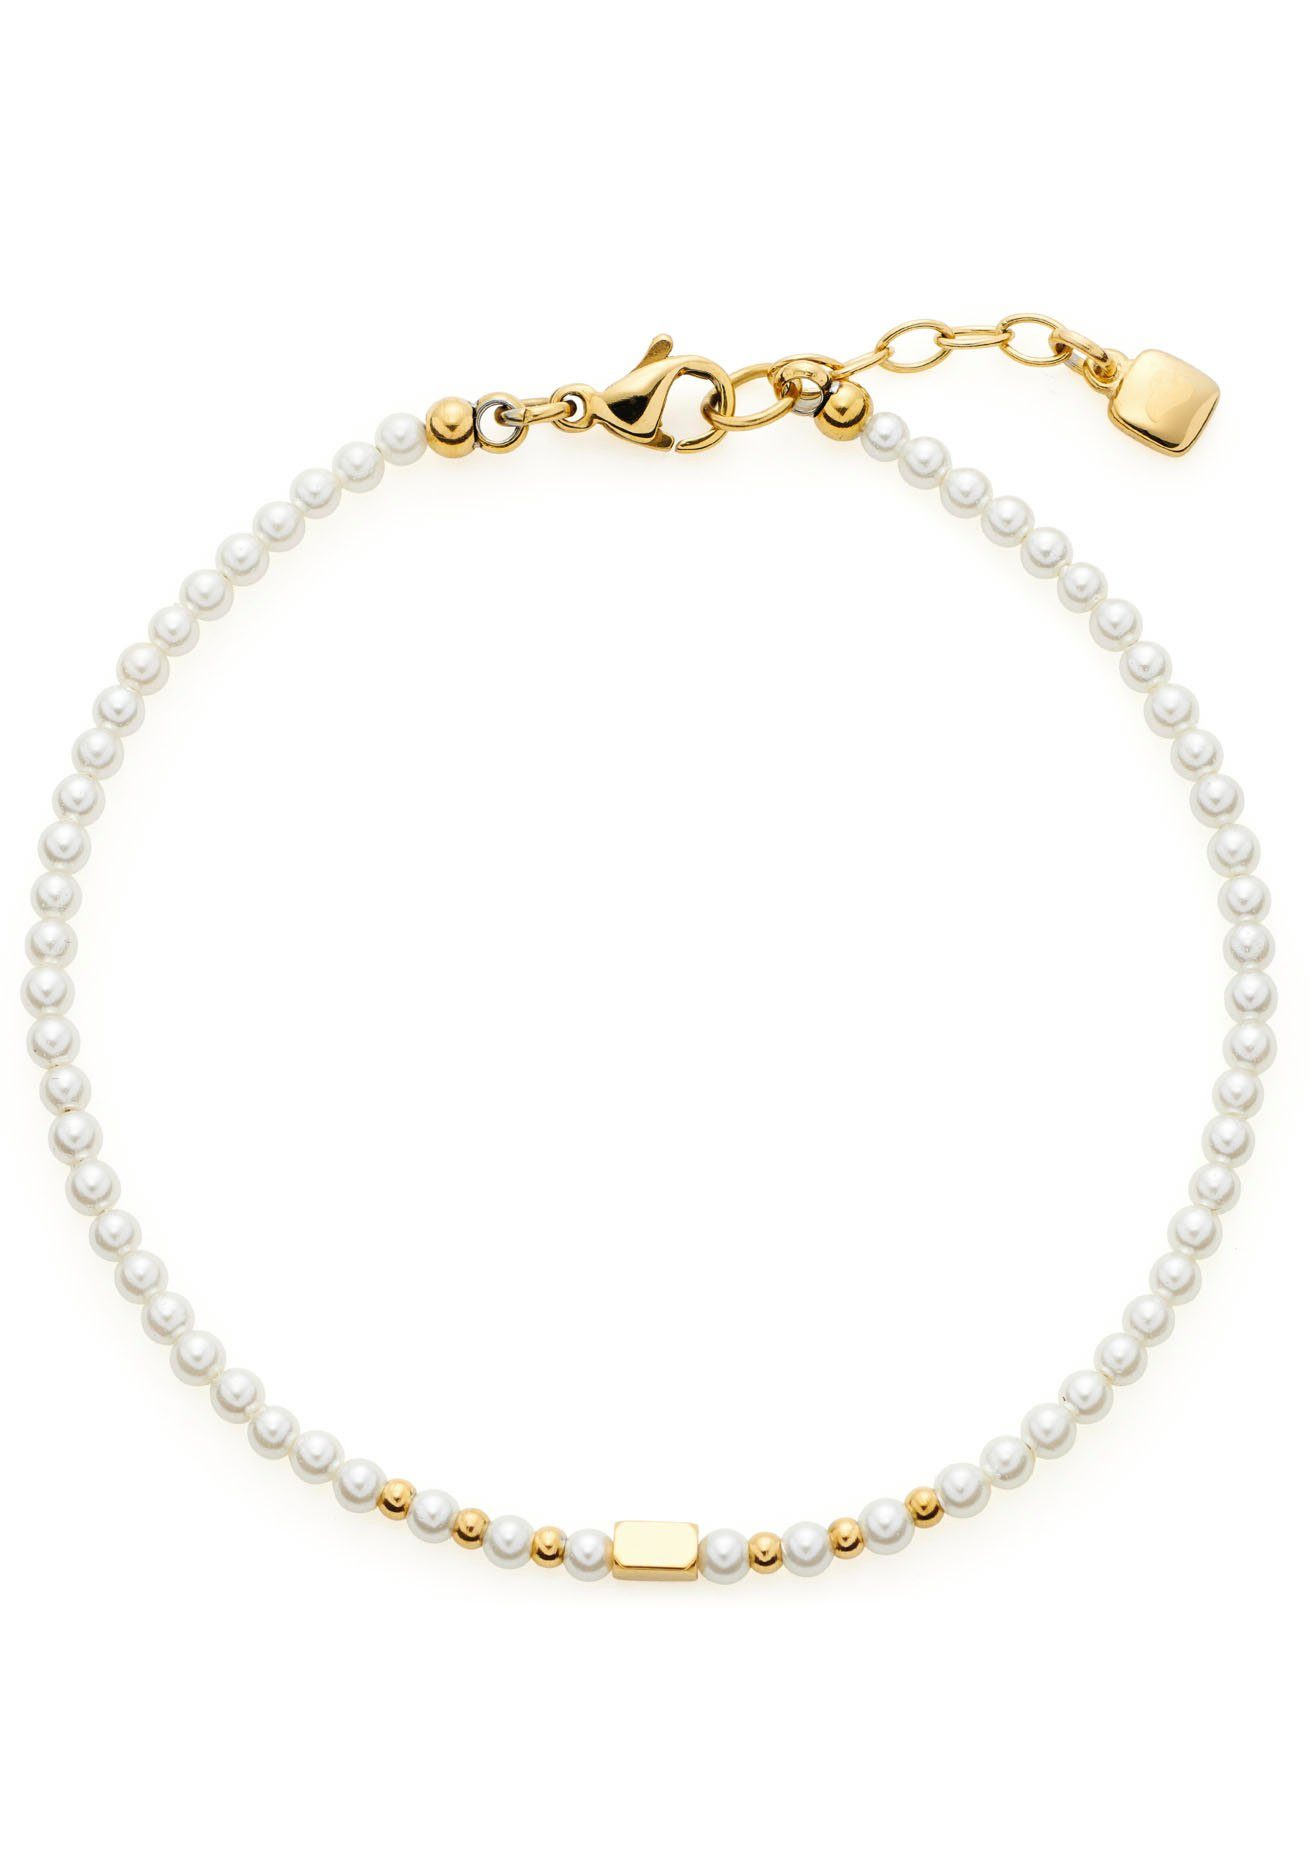 CIAO! BY LEONARDO Armband Doro, 022119, mit Perle (imitiert) | Perlenarmbänder